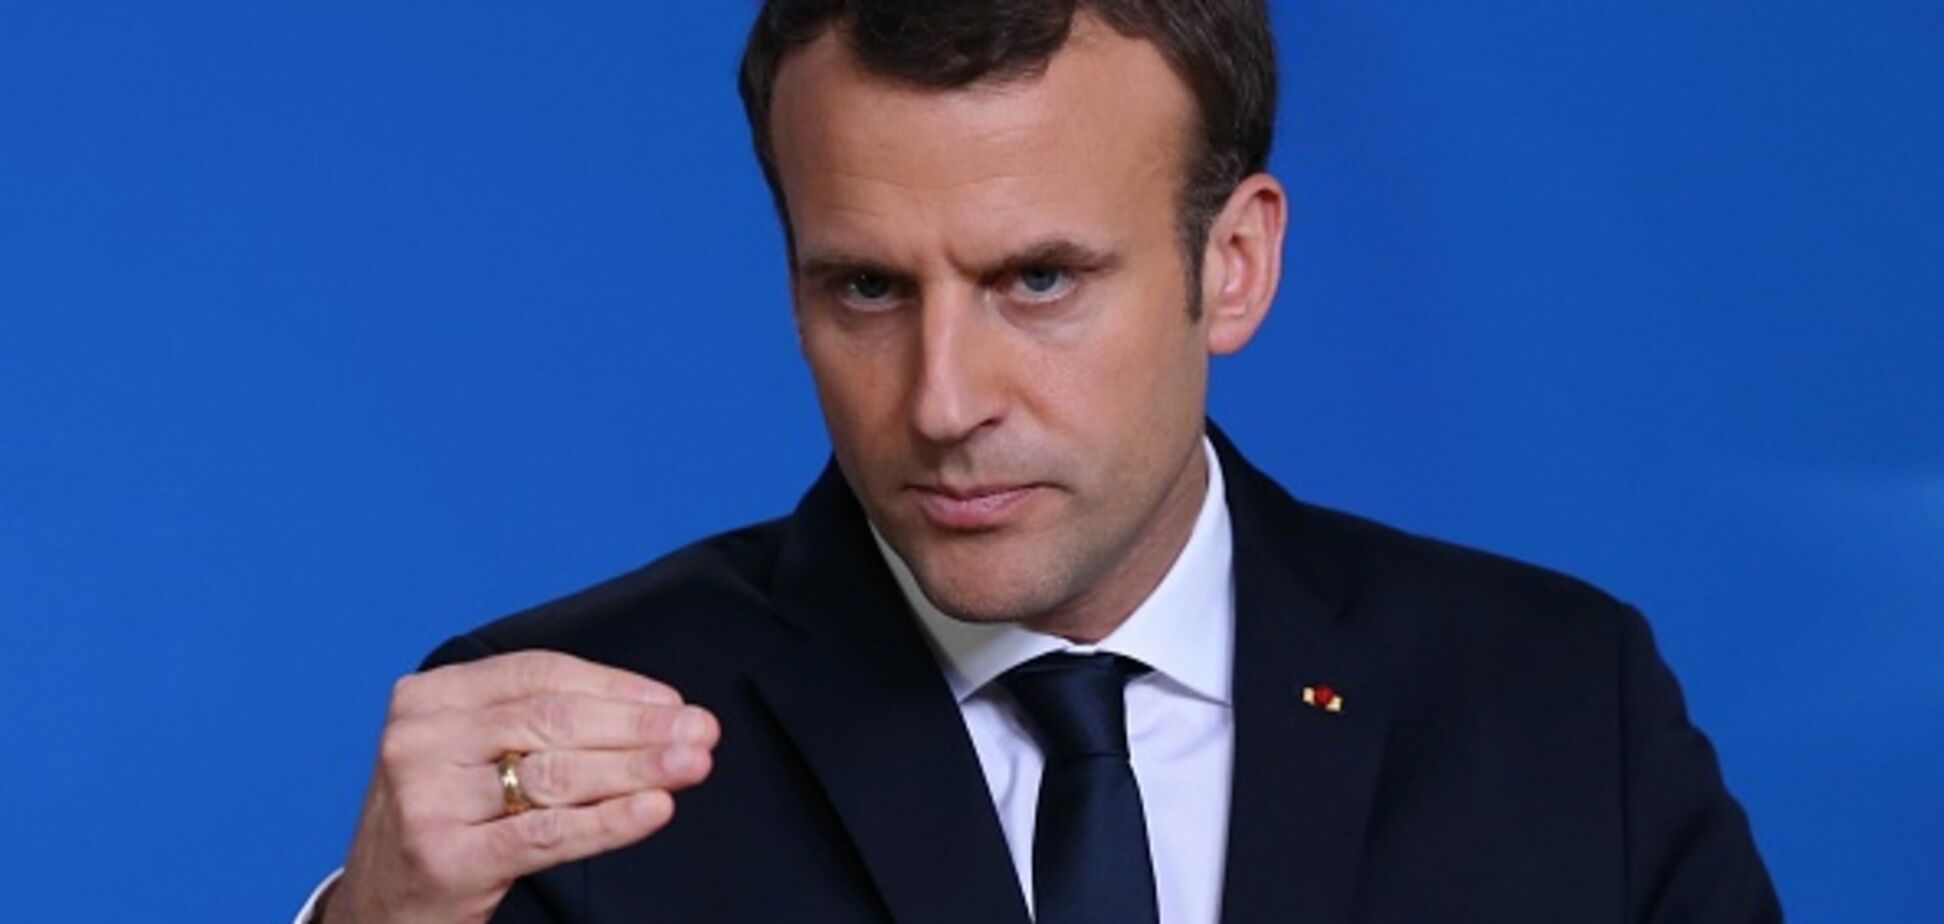 Отравление Скрипаля: Франция анонсировала санкции против России